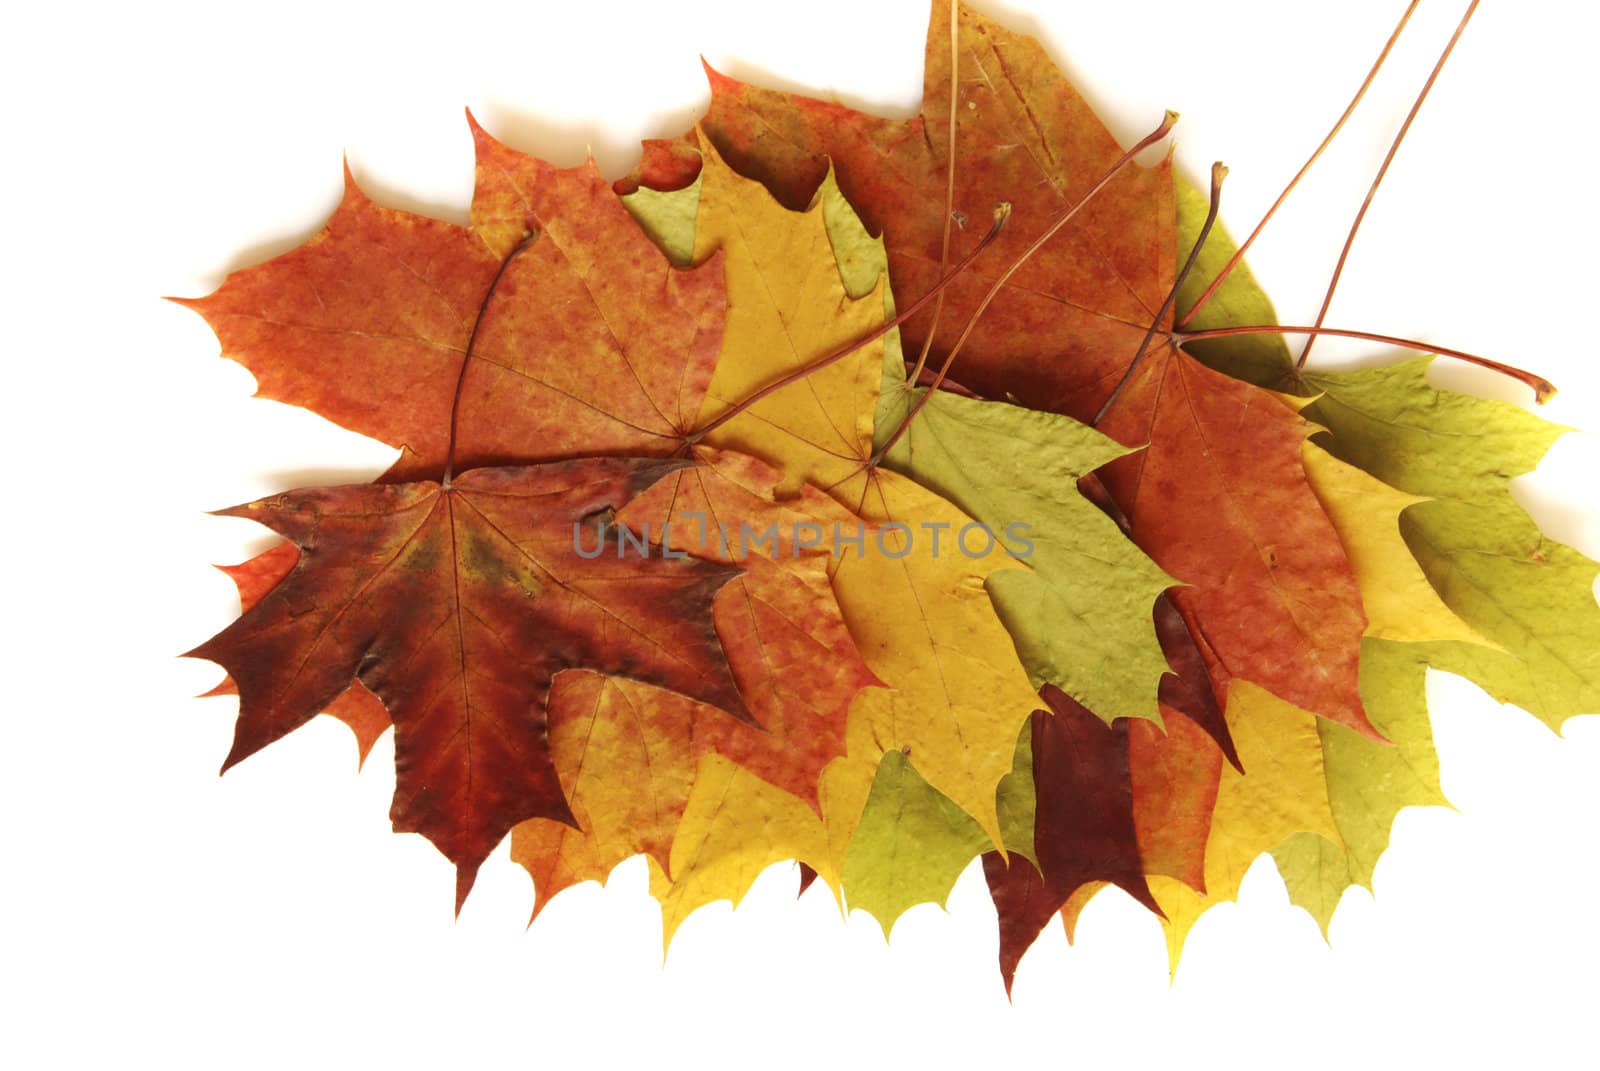 Maple leaves by drakodav